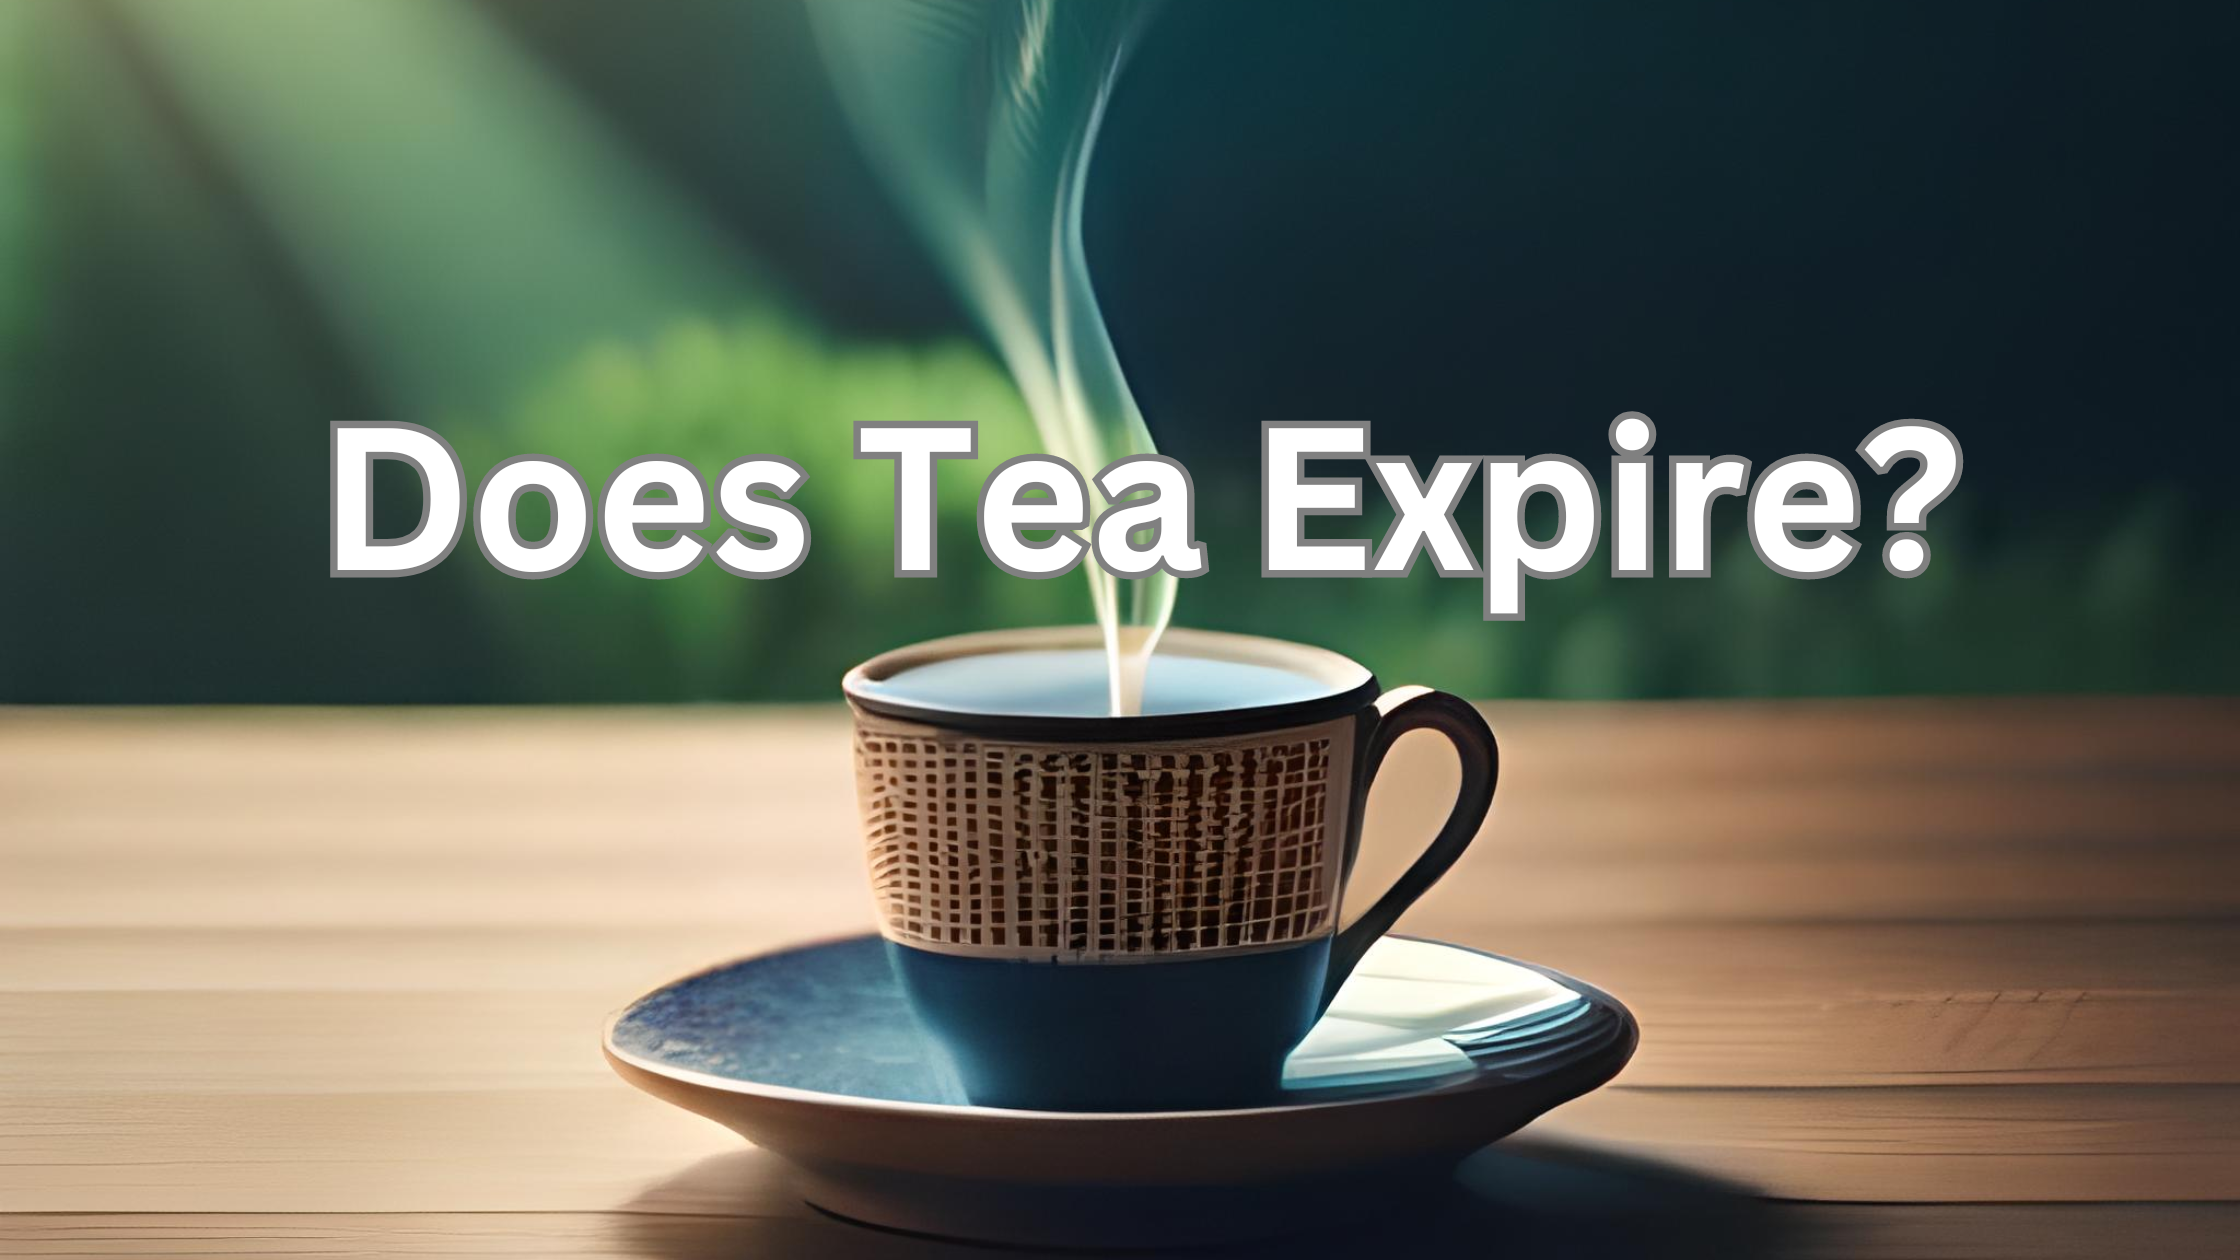 Does Tea Expire?